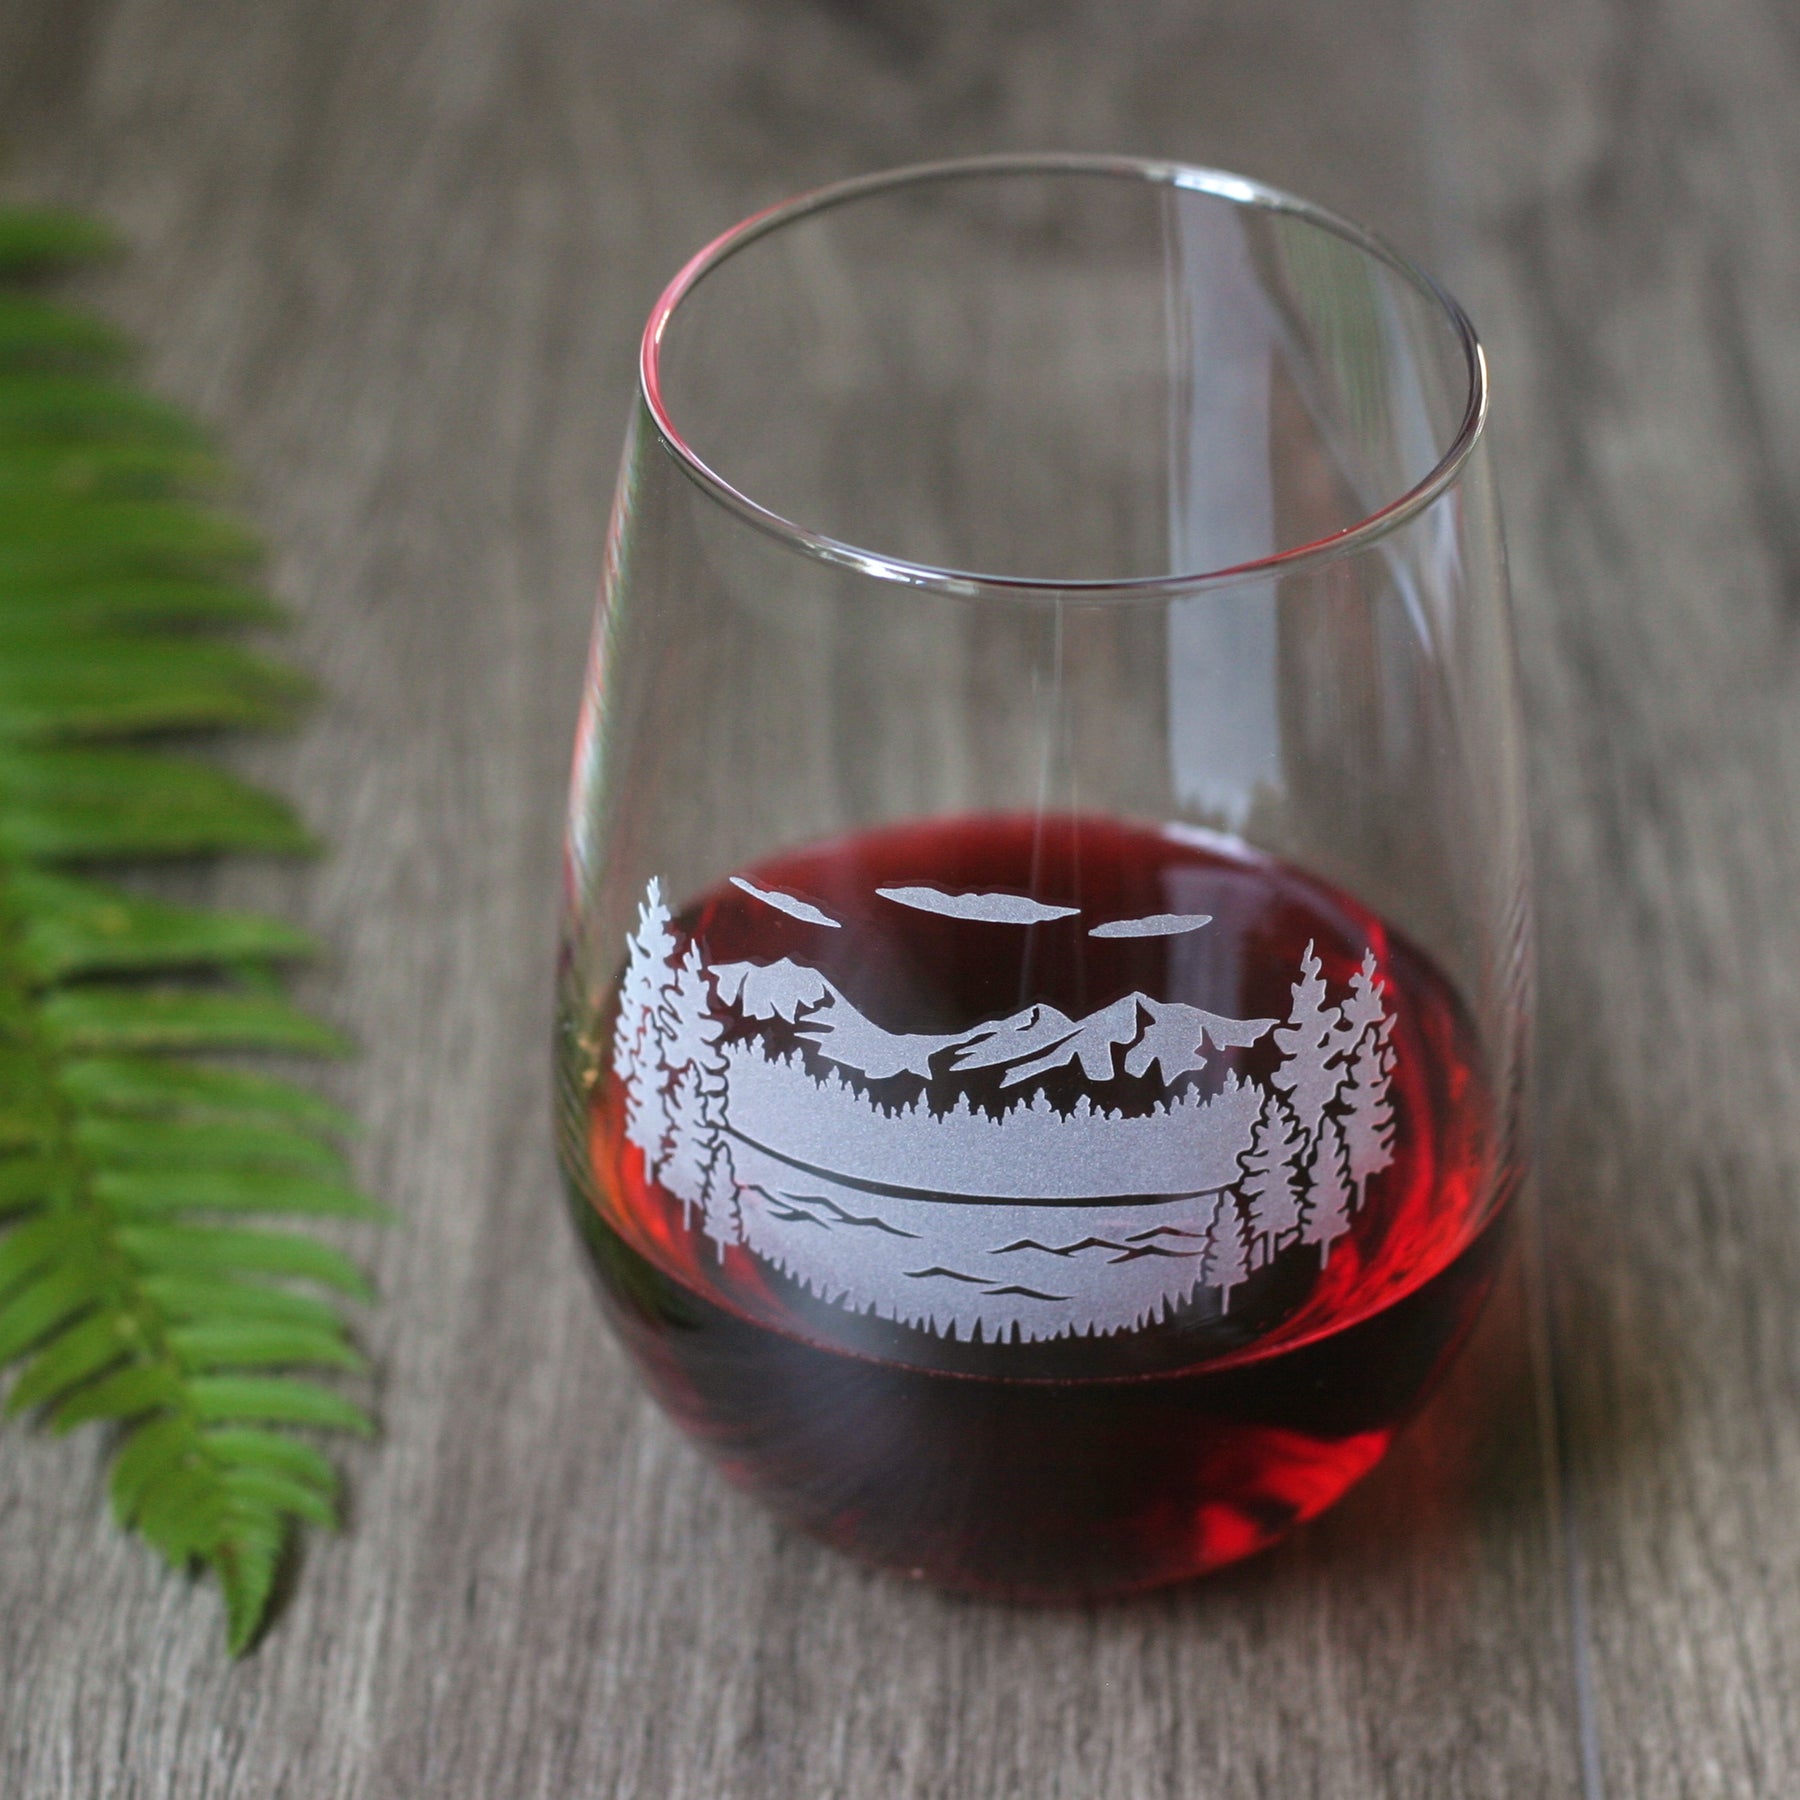 20 oz Anchor Hocking Vienna Stemless Red Wine Glass - Laser